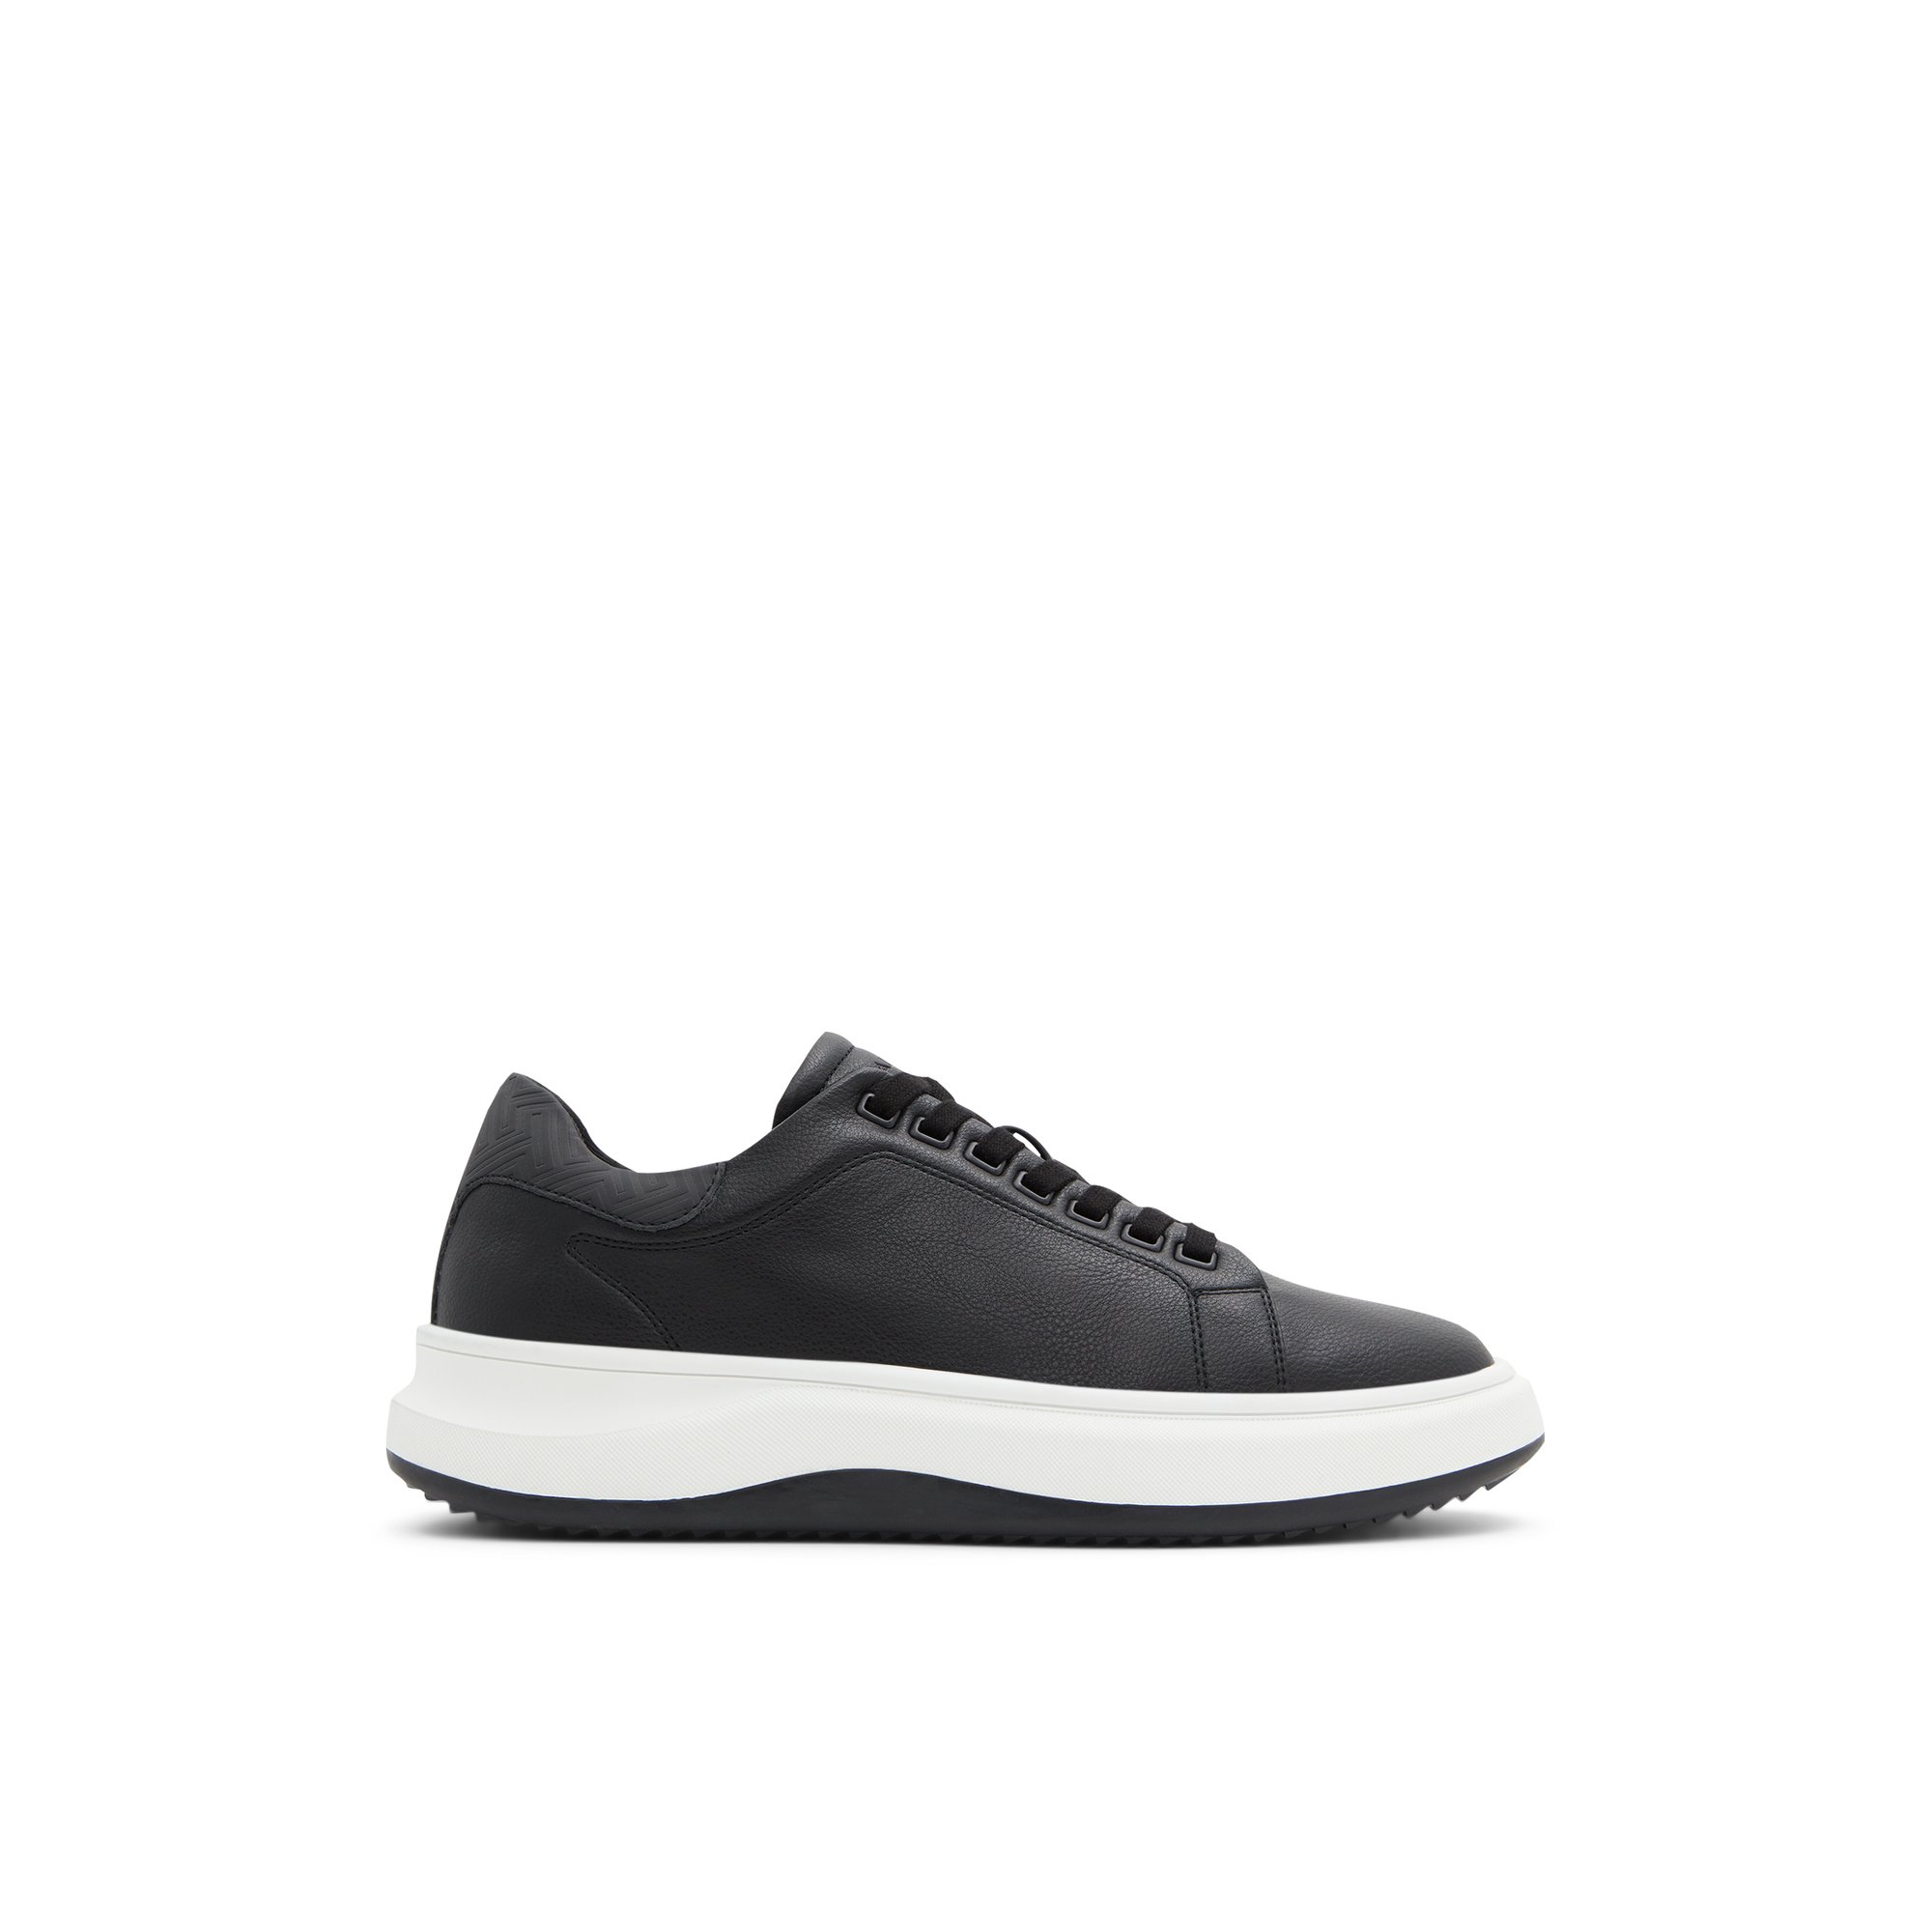 ALDO Wavespec - Men's Sneakers Low Top - Black